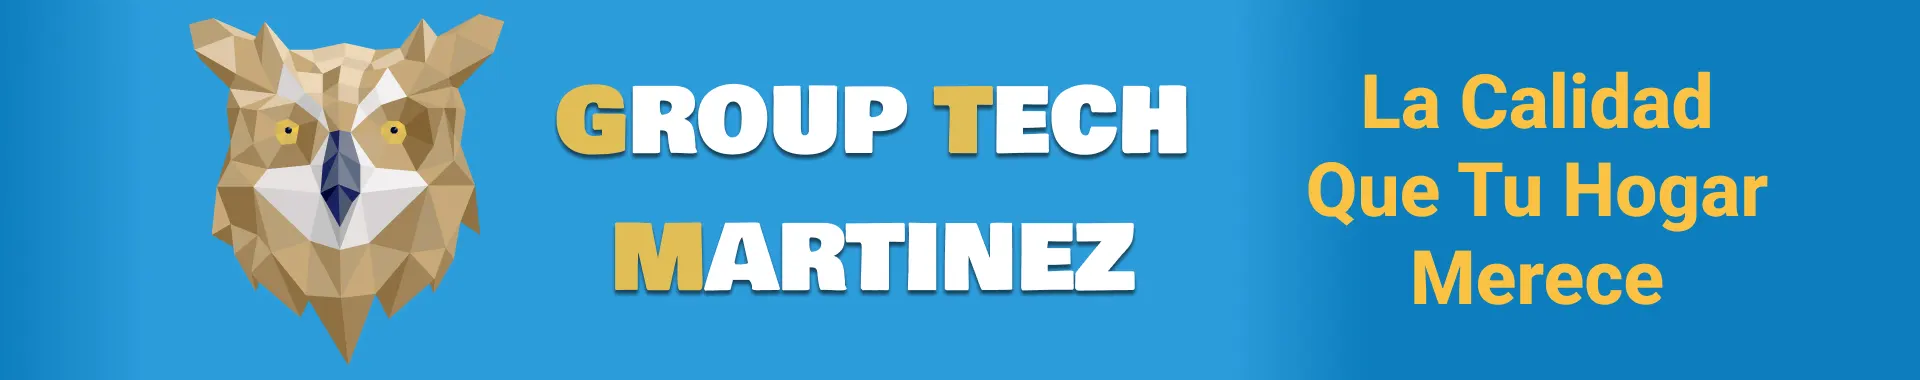 Imagen 2 del perfil de Group Tech Martínez